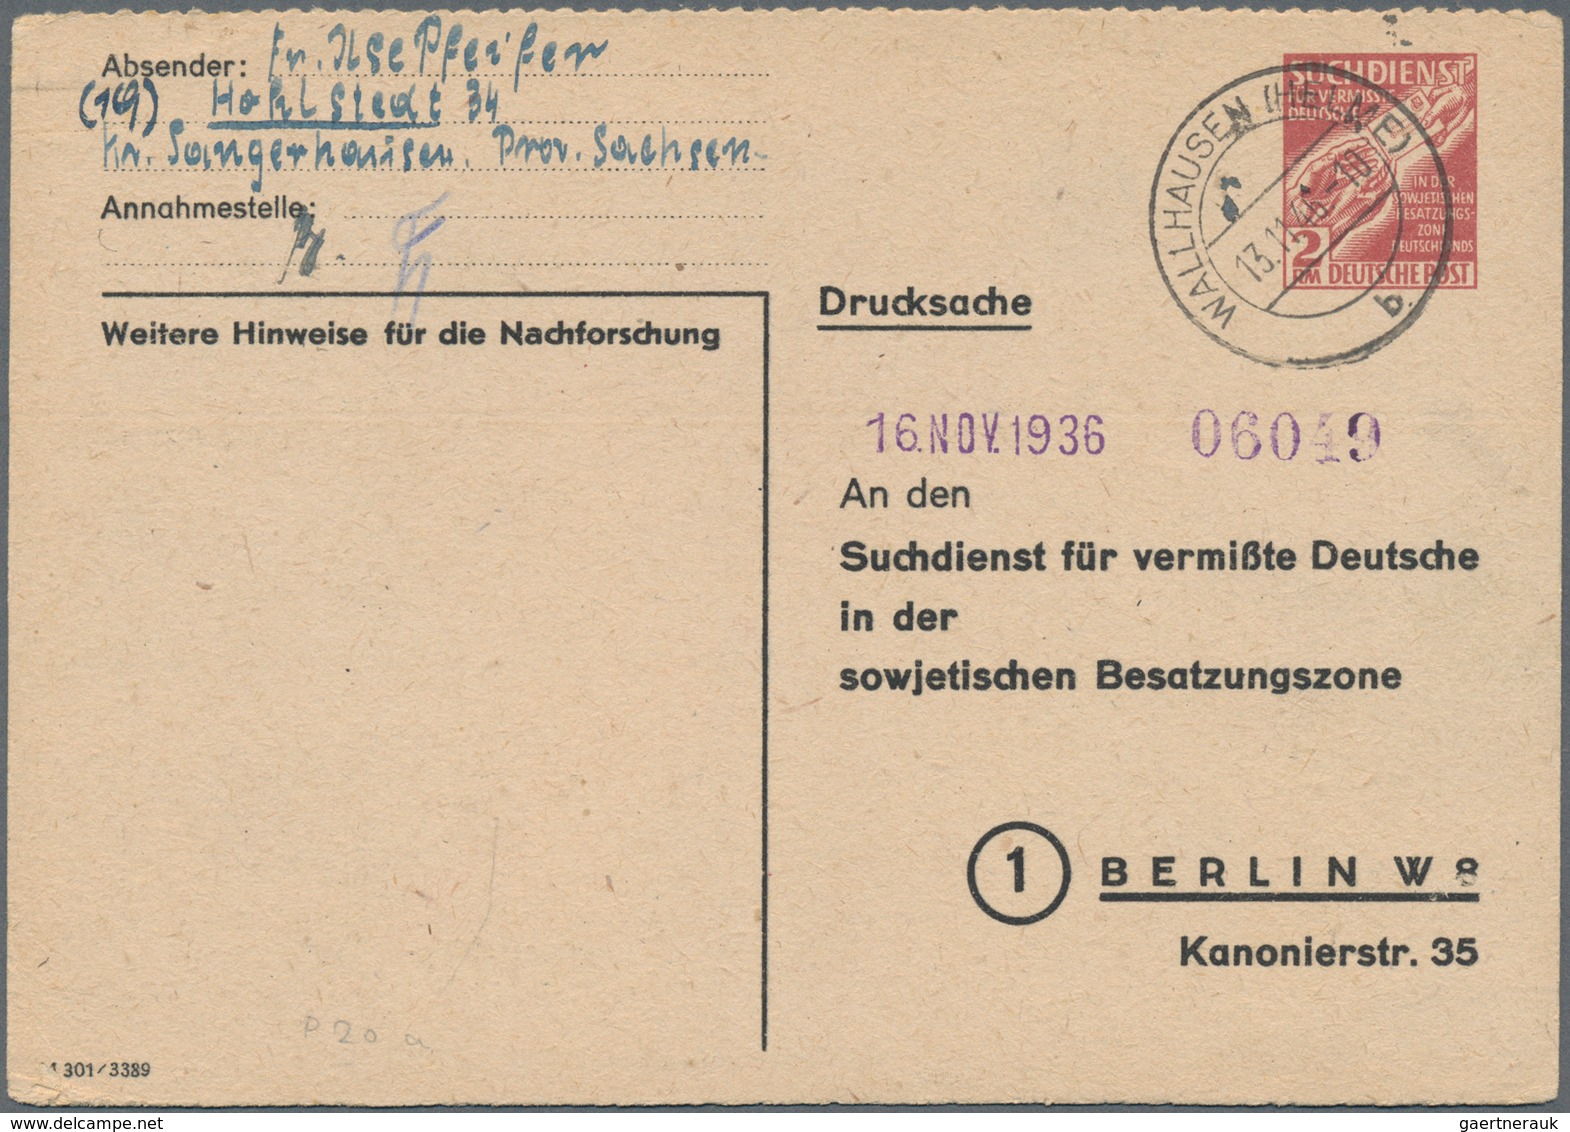 DDR - Ganzsachen: 1945/1990, SBZ und DDR, vielseitige Partie von ca. 200 gebrauchten und ungebraucht